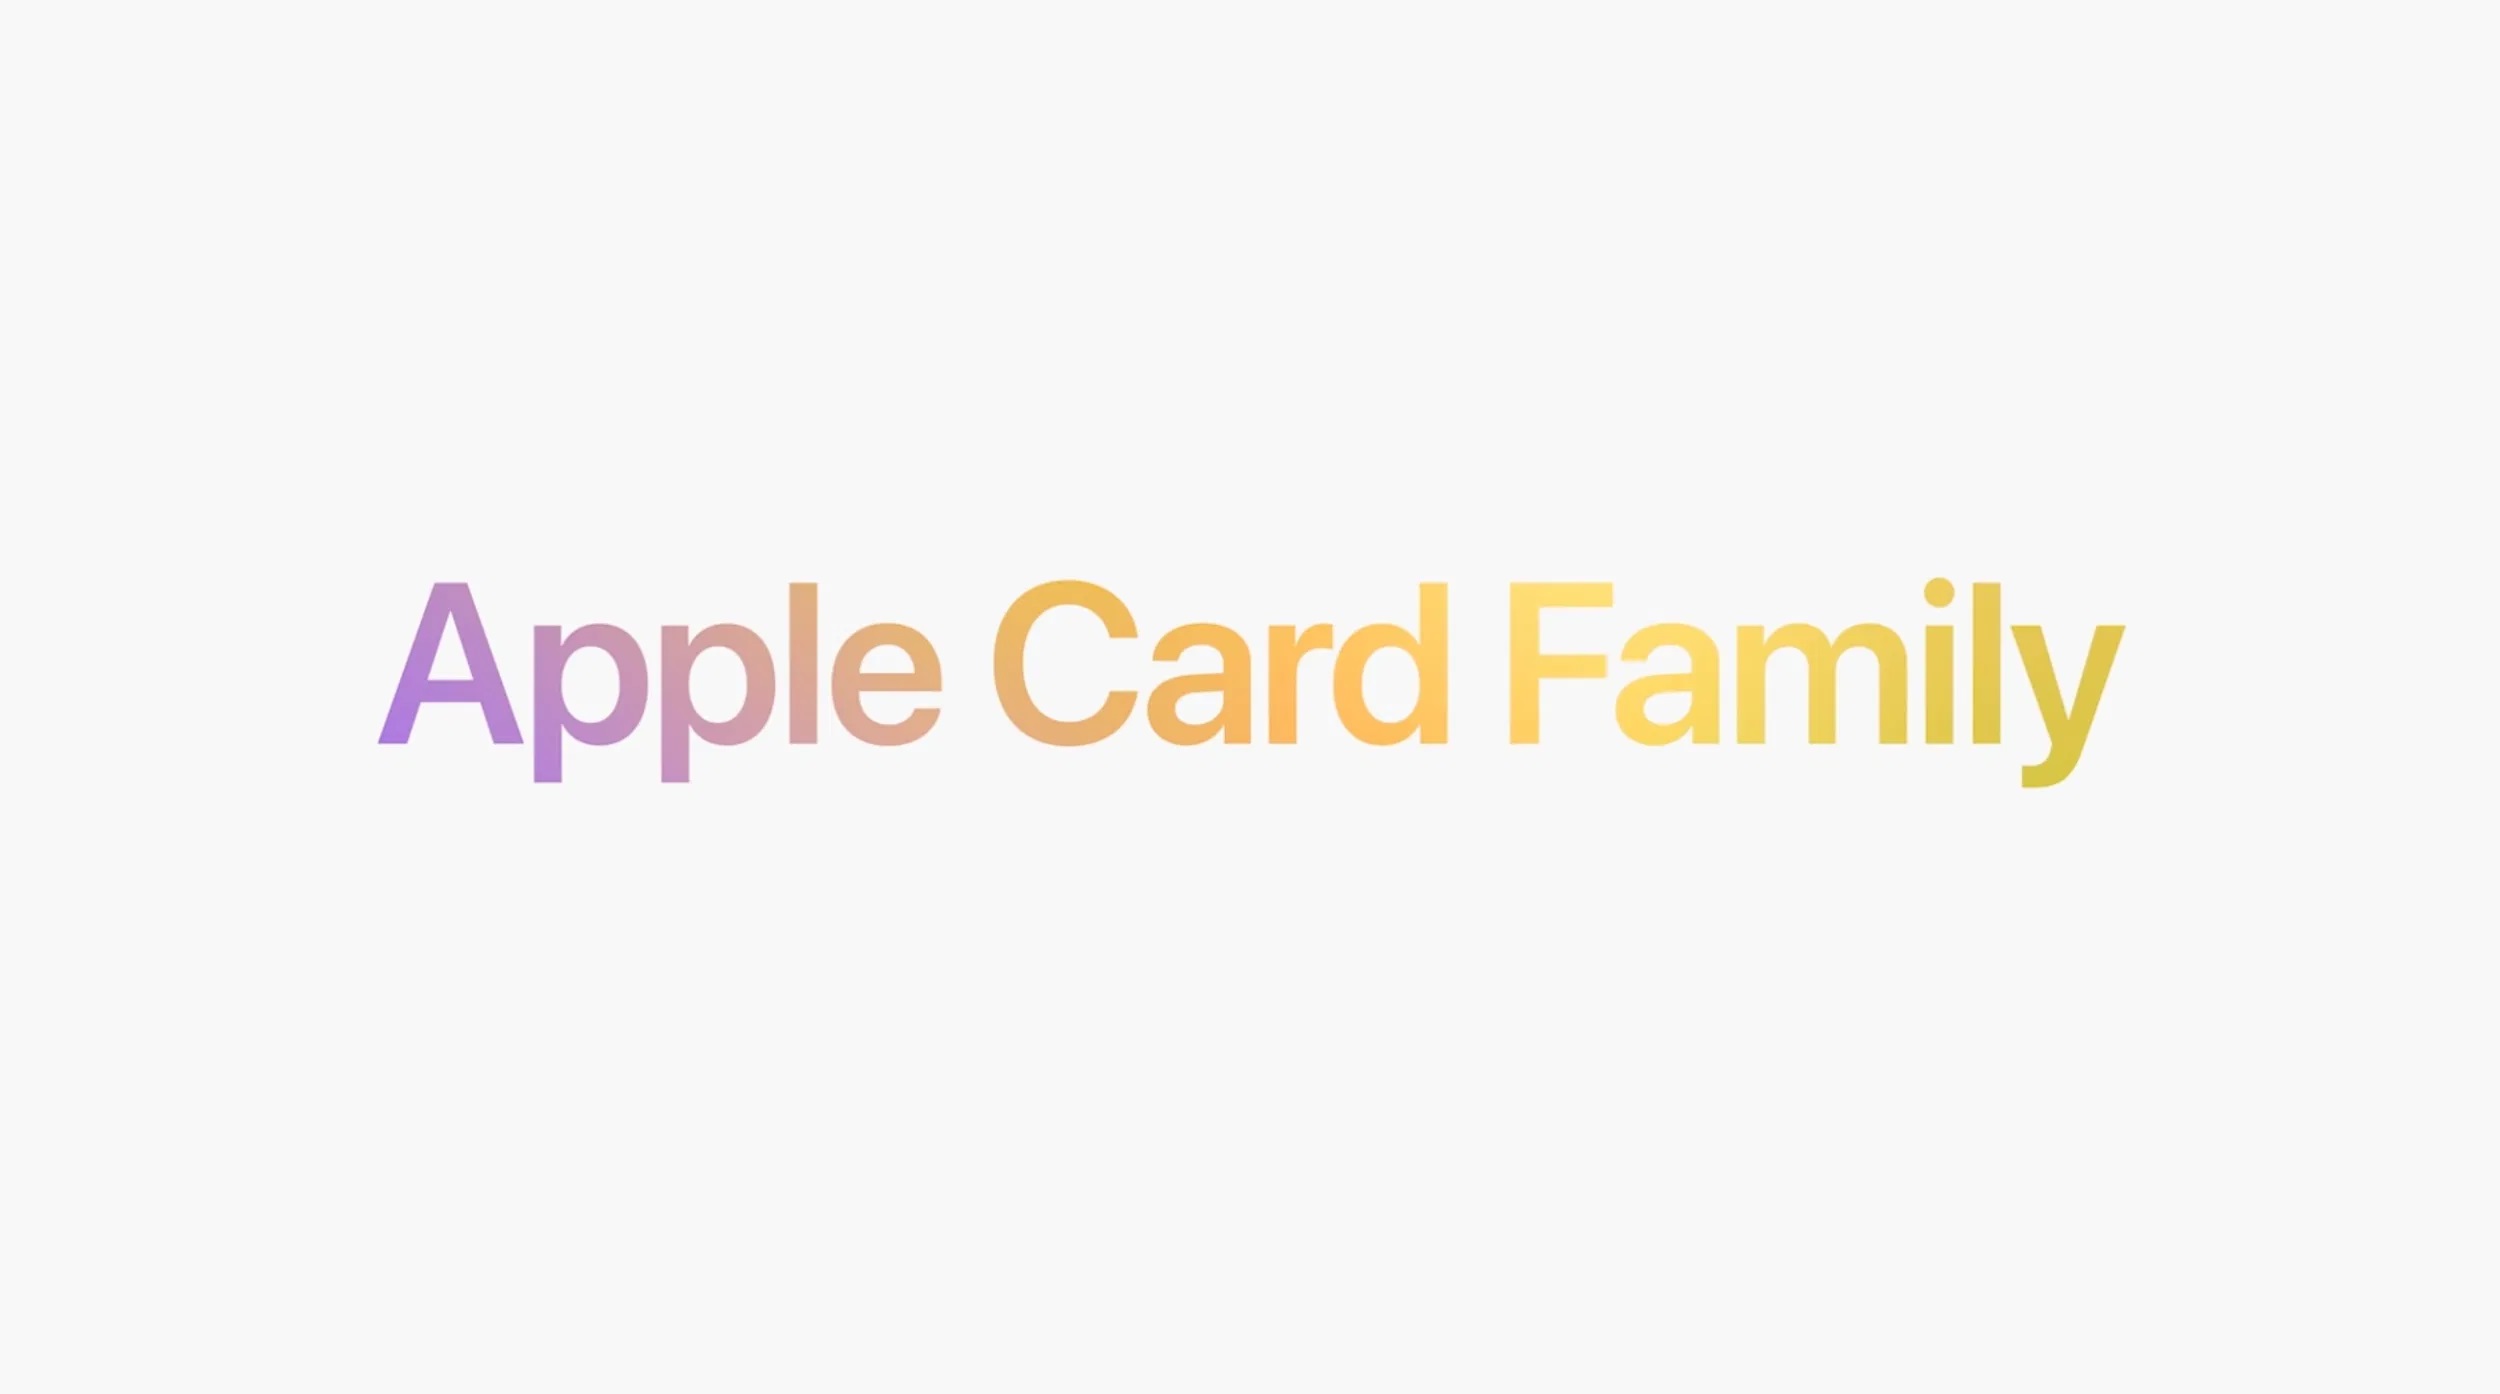 کارت اعتباری Apple Card Family